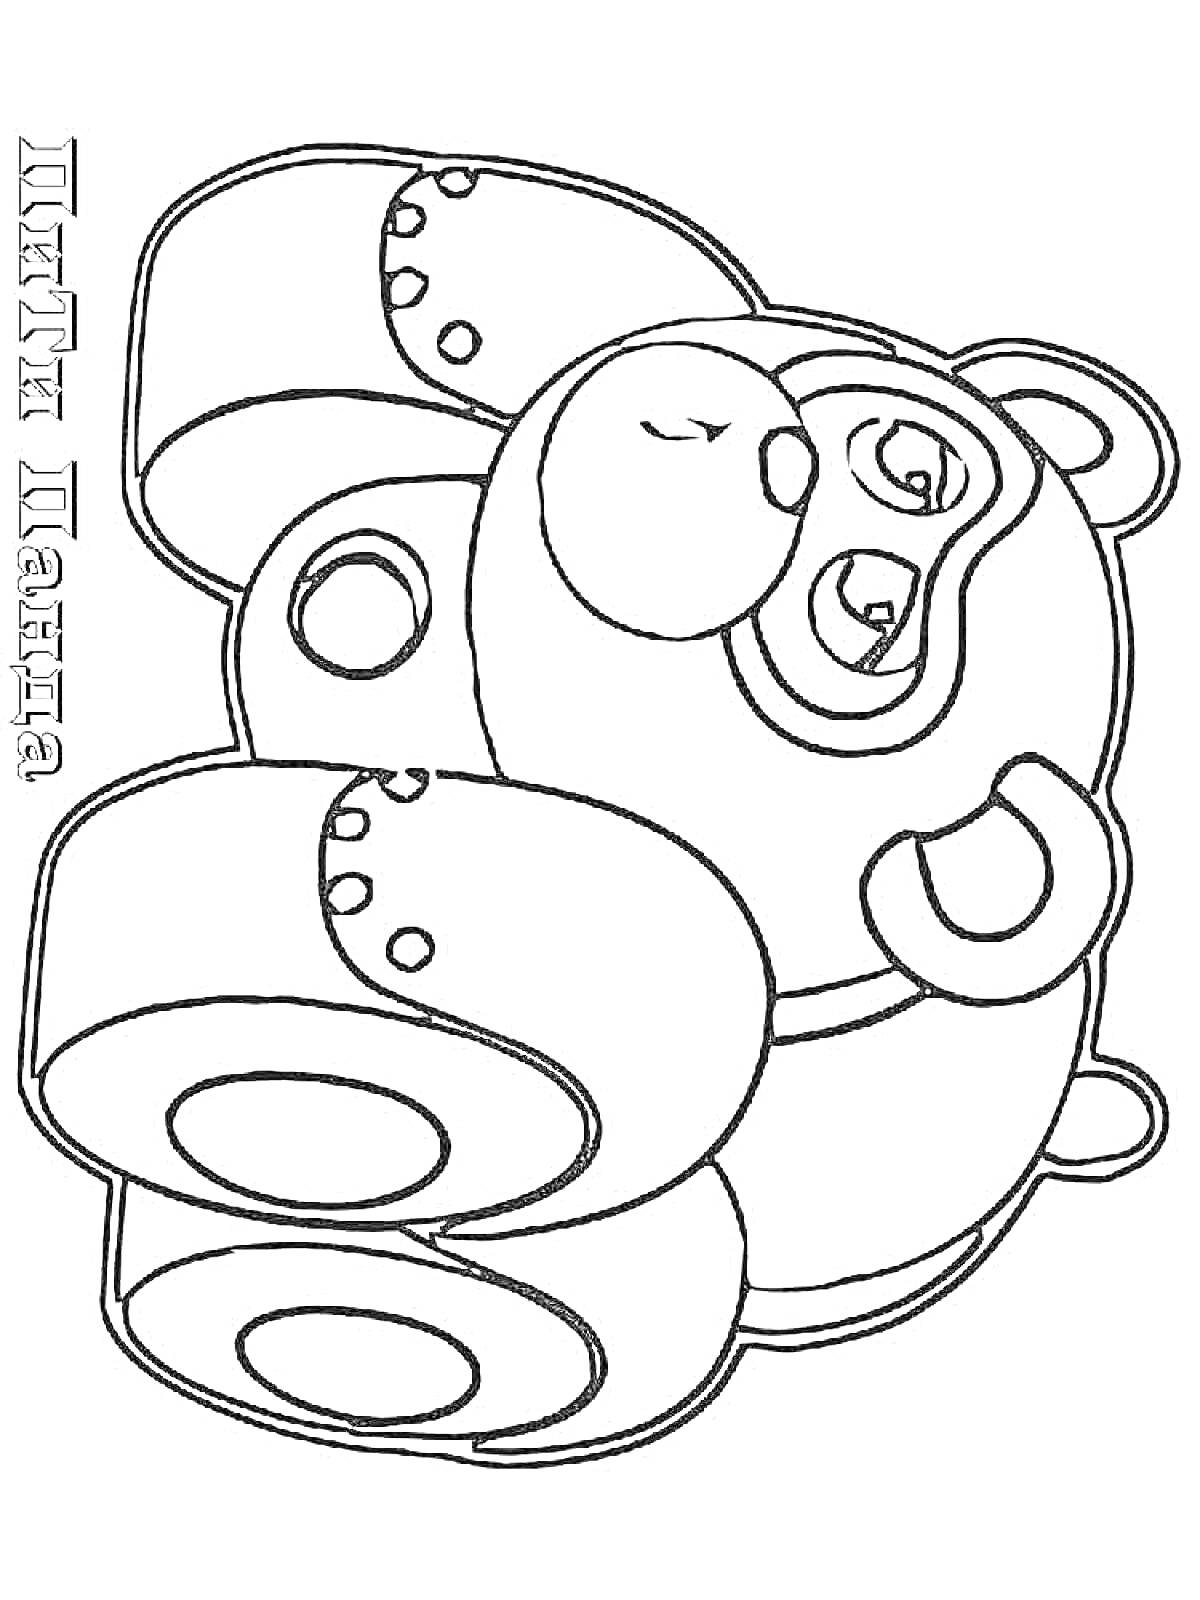 Раскраска Машинка-медведь из мультфильма 